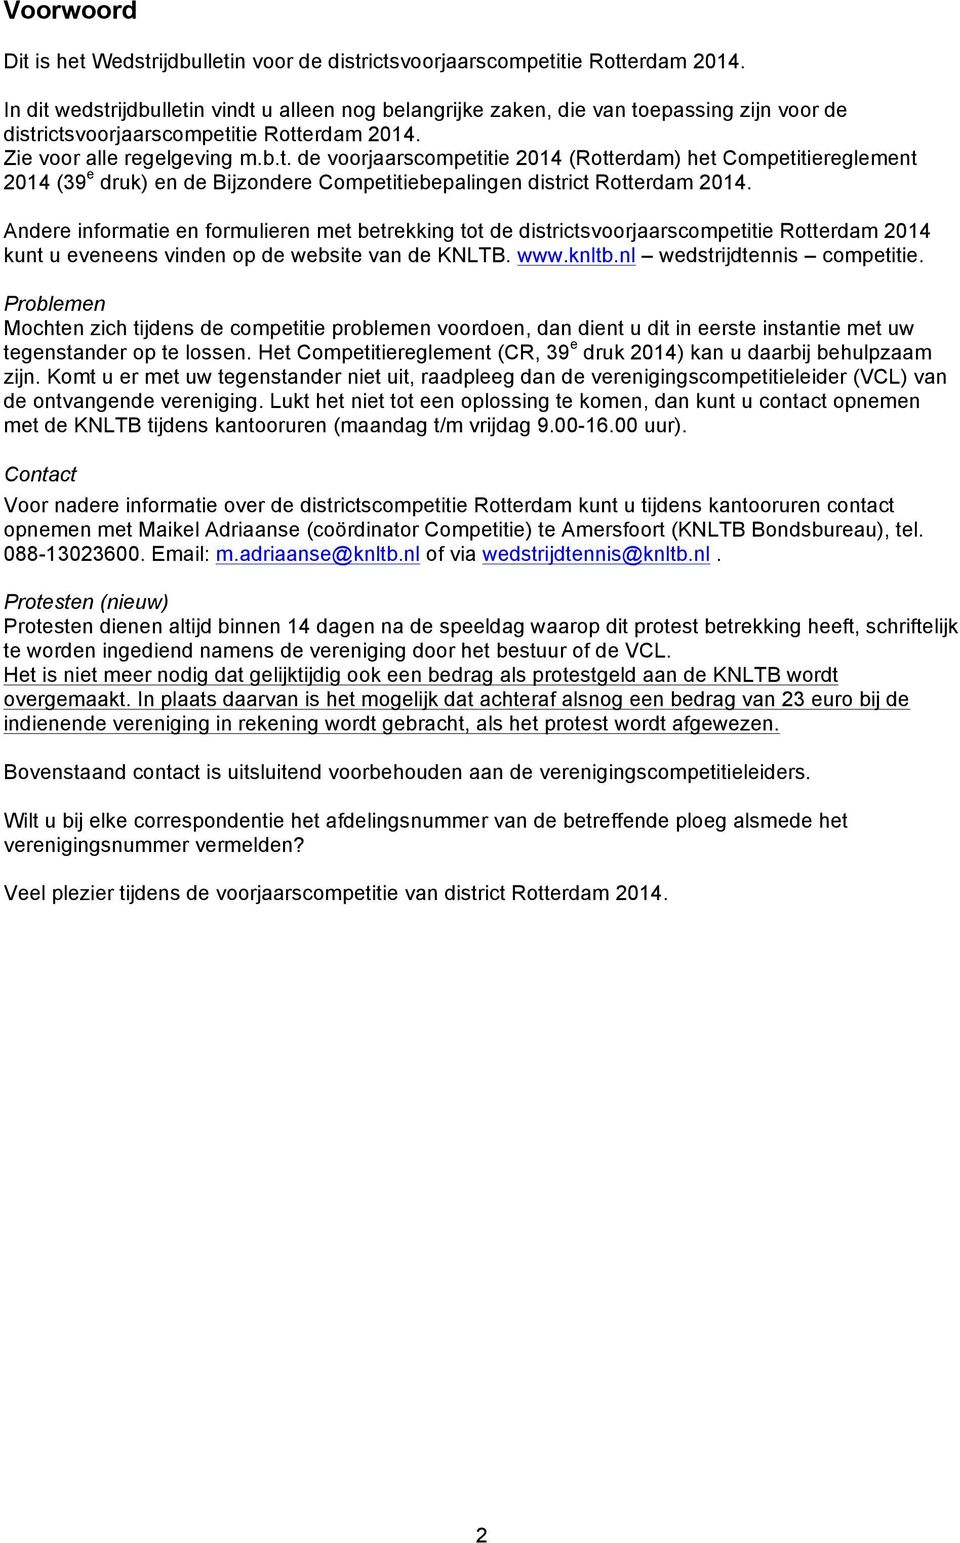 Andere informatie en formulieren met betrekking tot de districtsvoorjaarscompetitie Rotterdam 2014 kunt u eveneens vinden op de website van de KNLTB. www.knltb.nl wedstrijdtennis competitie.